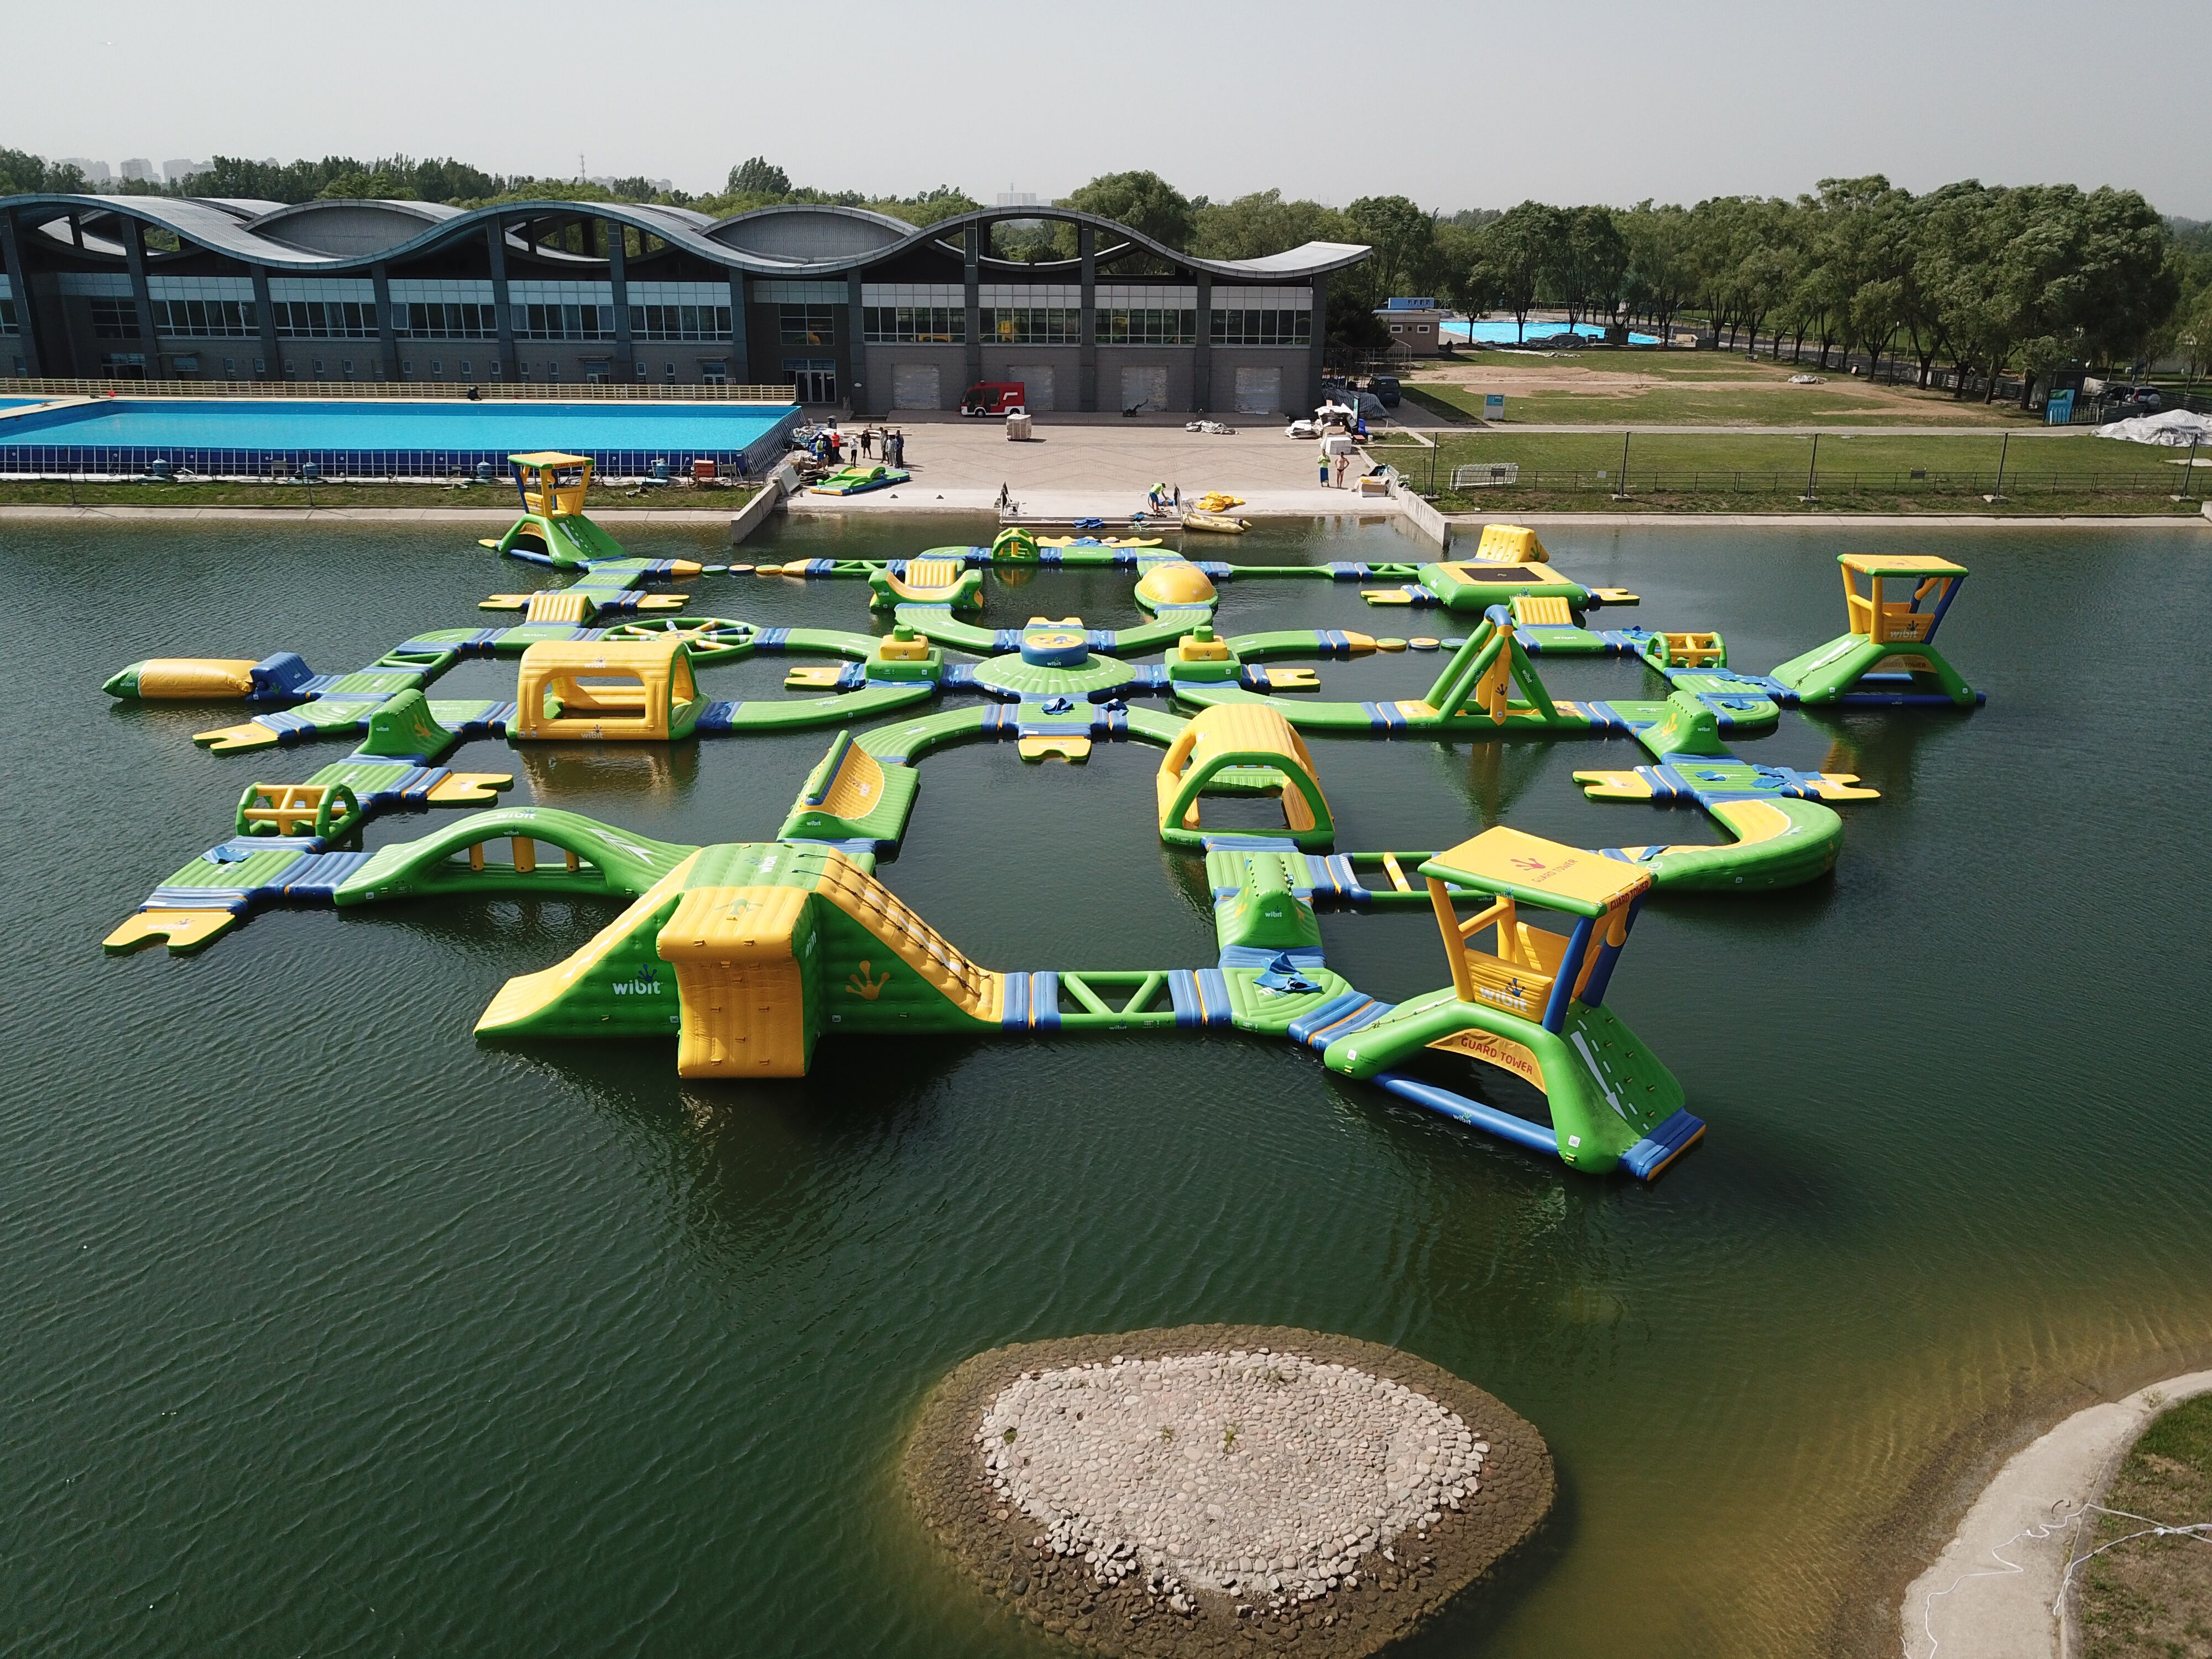 2021玛雅水公园玩乐攻略,玛雅水公园是深圳市内唯一的...【去哪儿攻略】